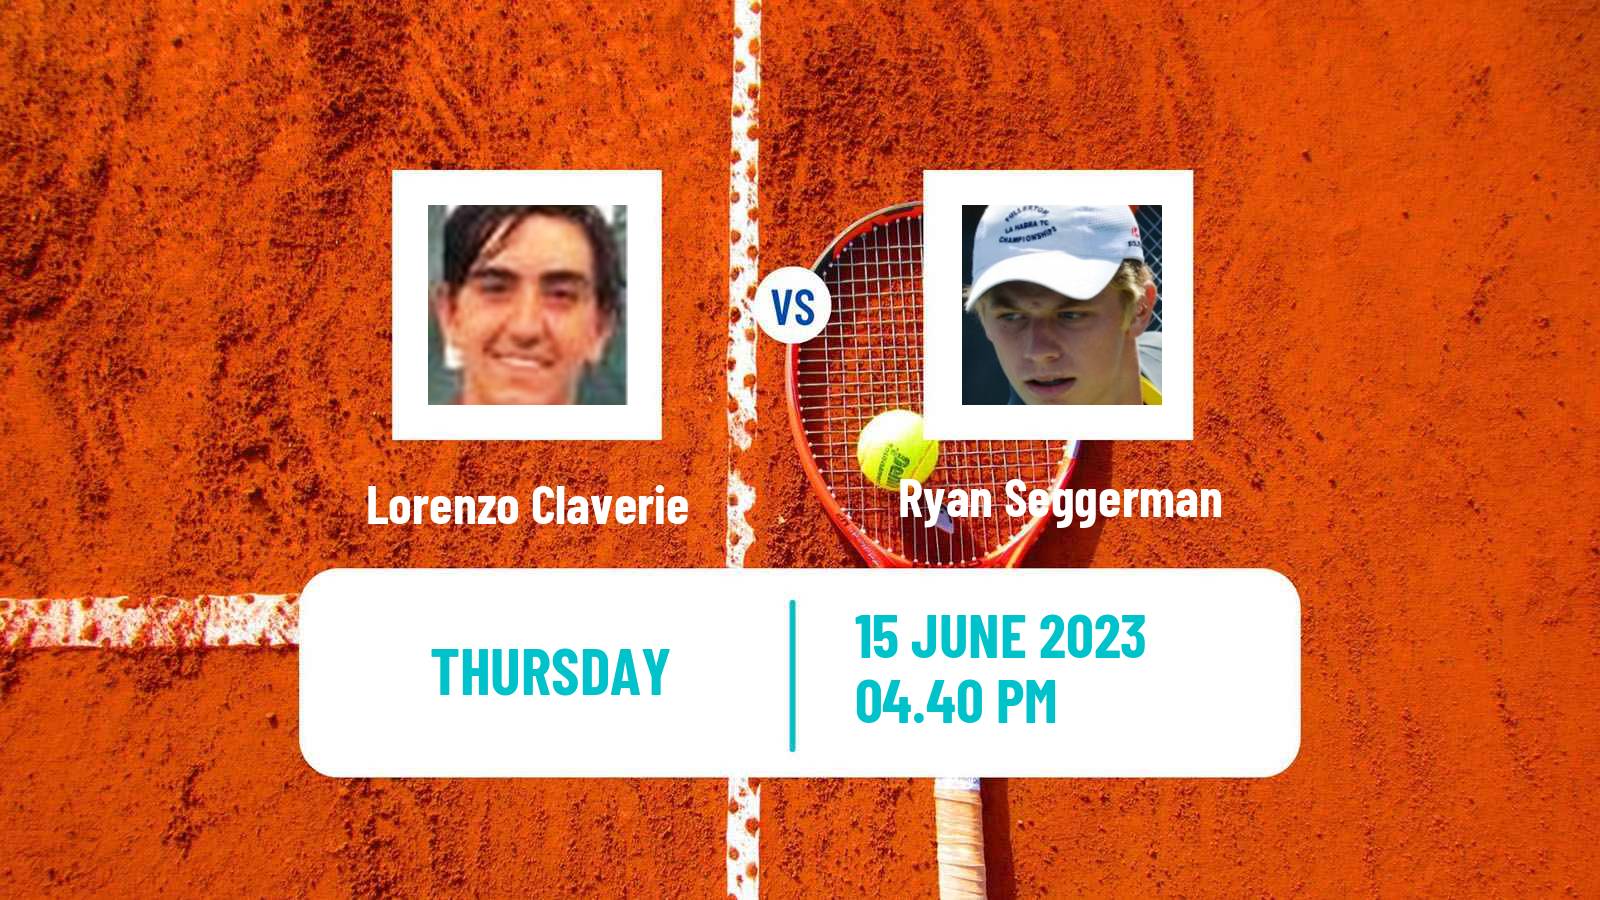 Tennis ITF M15 San Diego Ca 2 Men Lorenzo Claverie - Ryan Seggerman